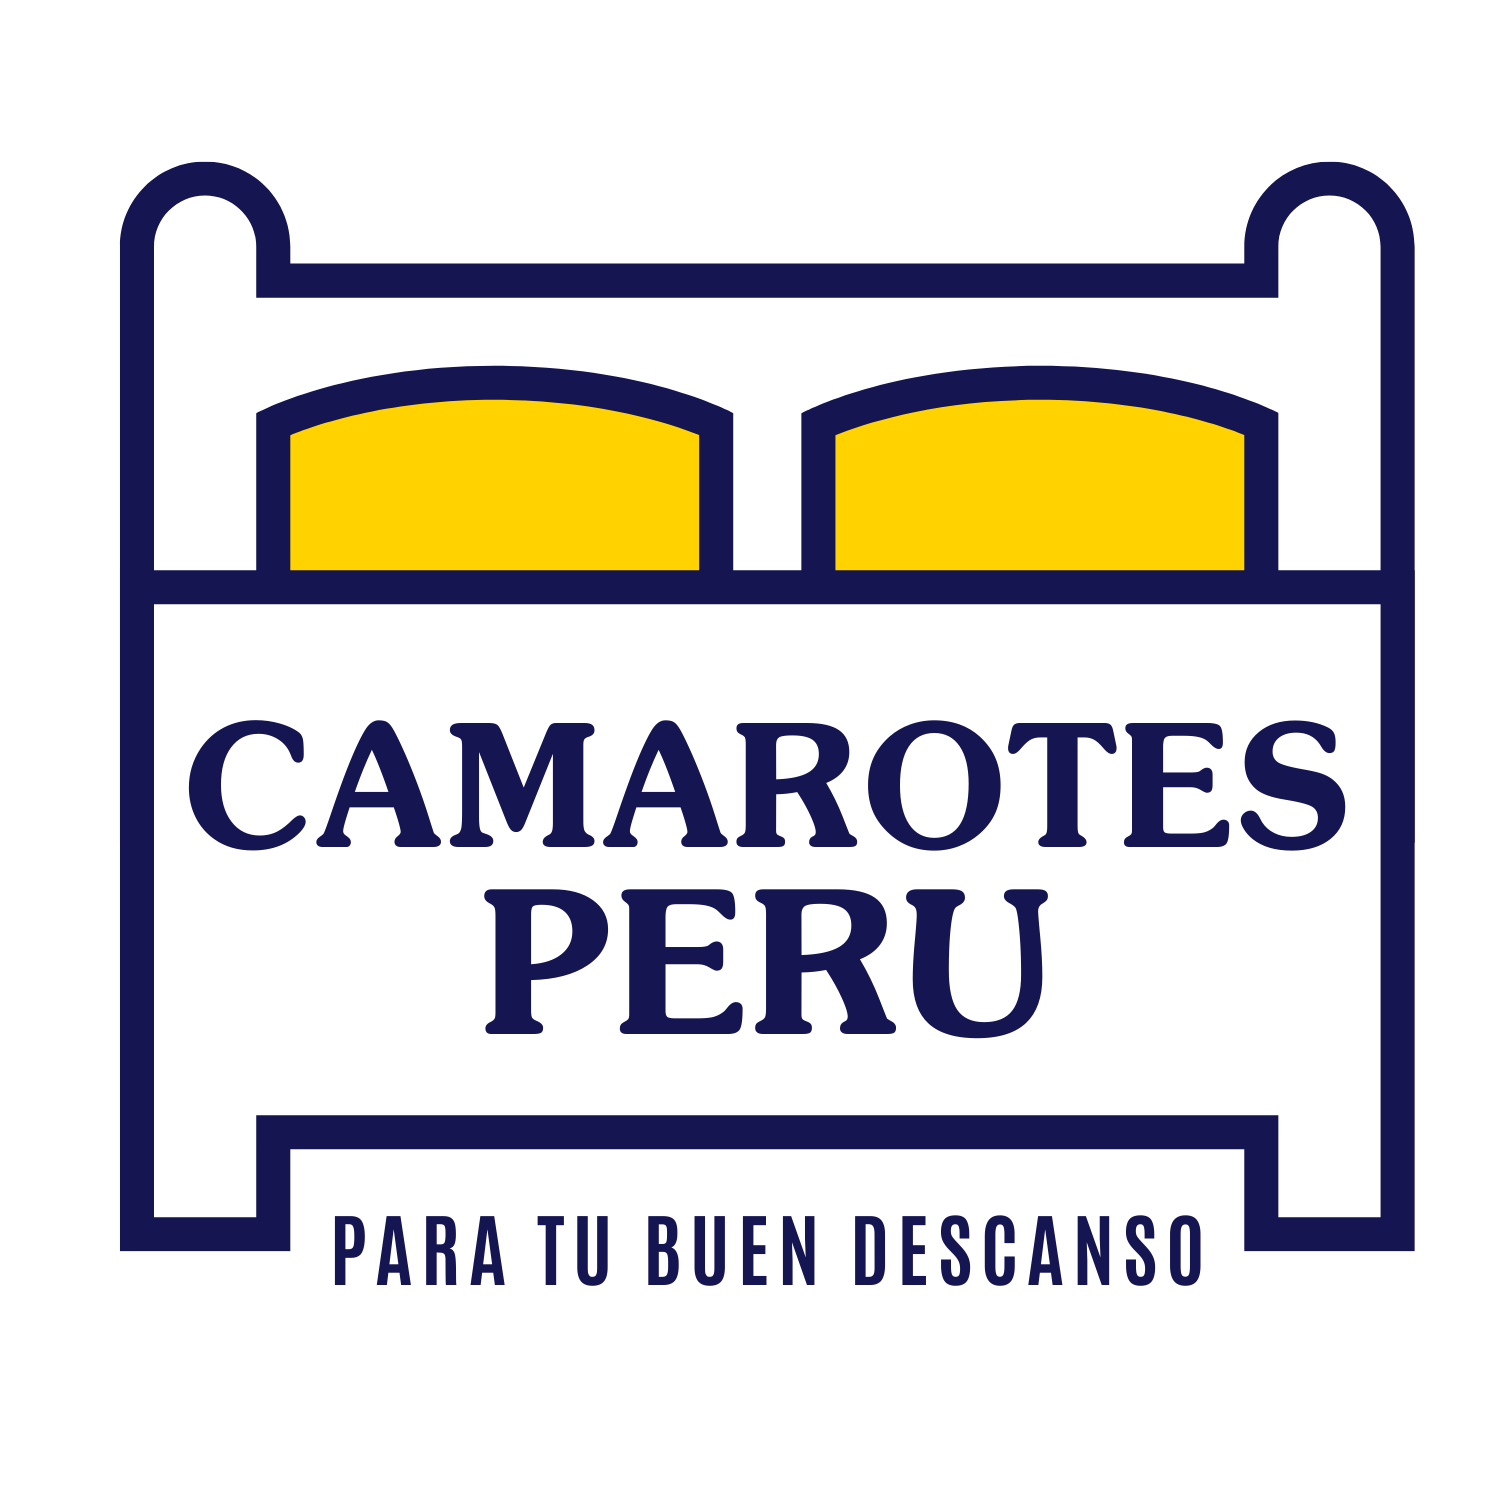 Camarotes Peru 